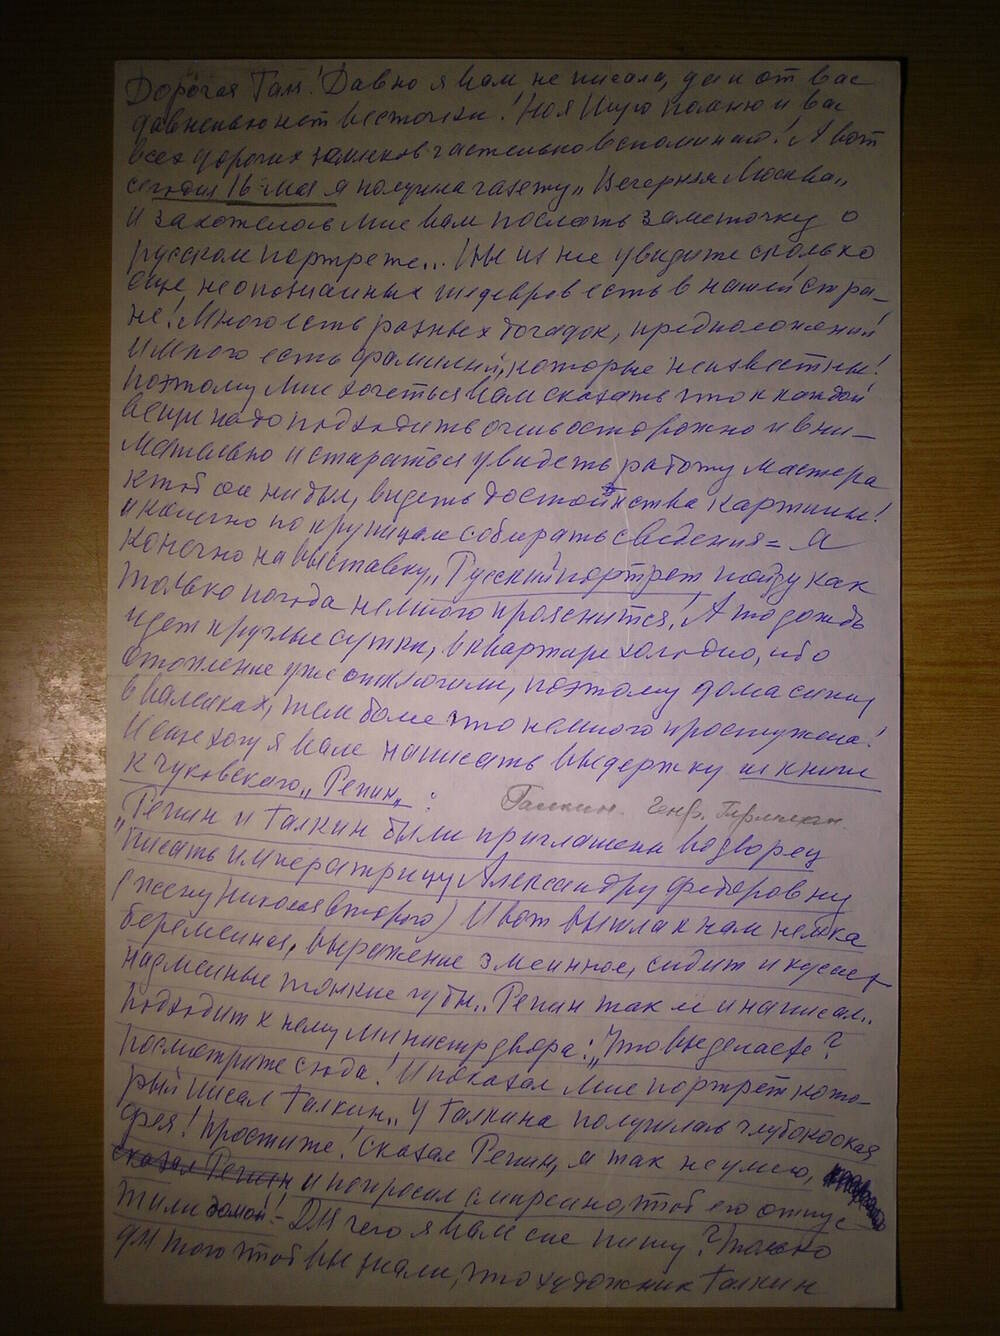 Письмо от Мазуровой Е.Я. Комаровой Г.Н. личного и делового характера. Г. Москва.